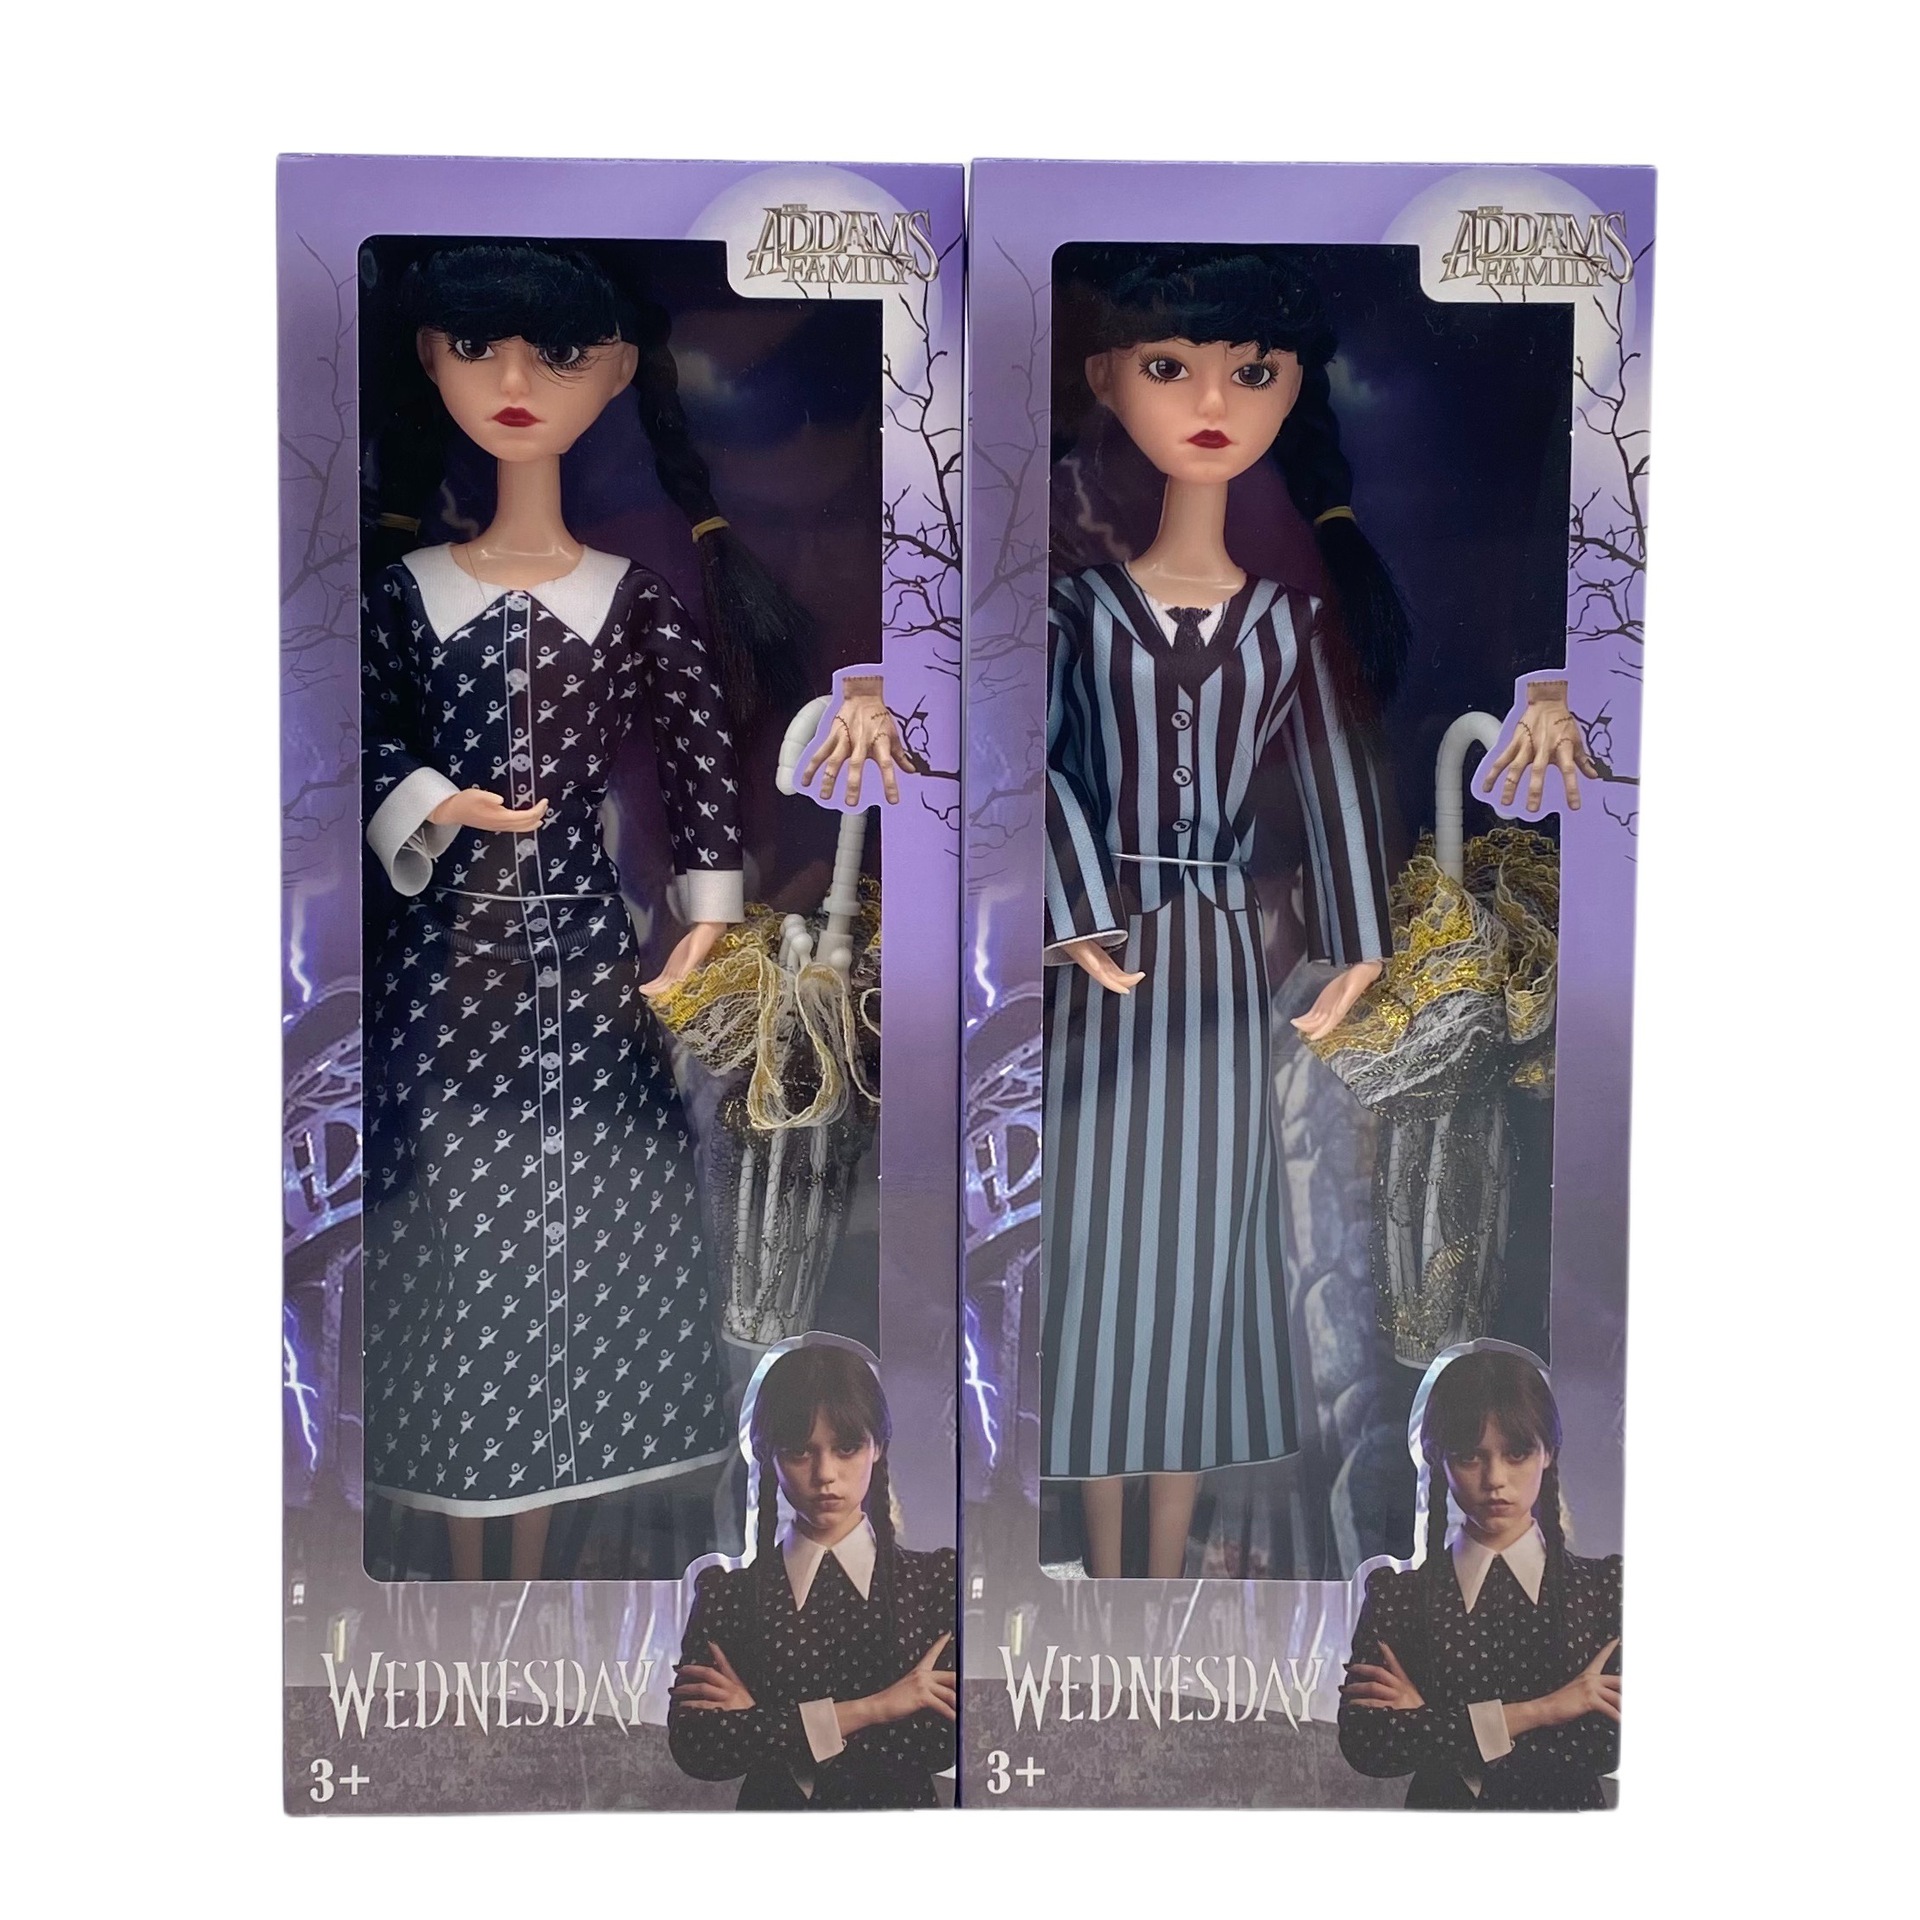 Bambole Loofamy Wednesday Addams, bambola di plastica della famiglia Addams, 11,5 pollici, abito a righe a maniche corte, regali di compleanno per i fan delle ragazze dei bambini